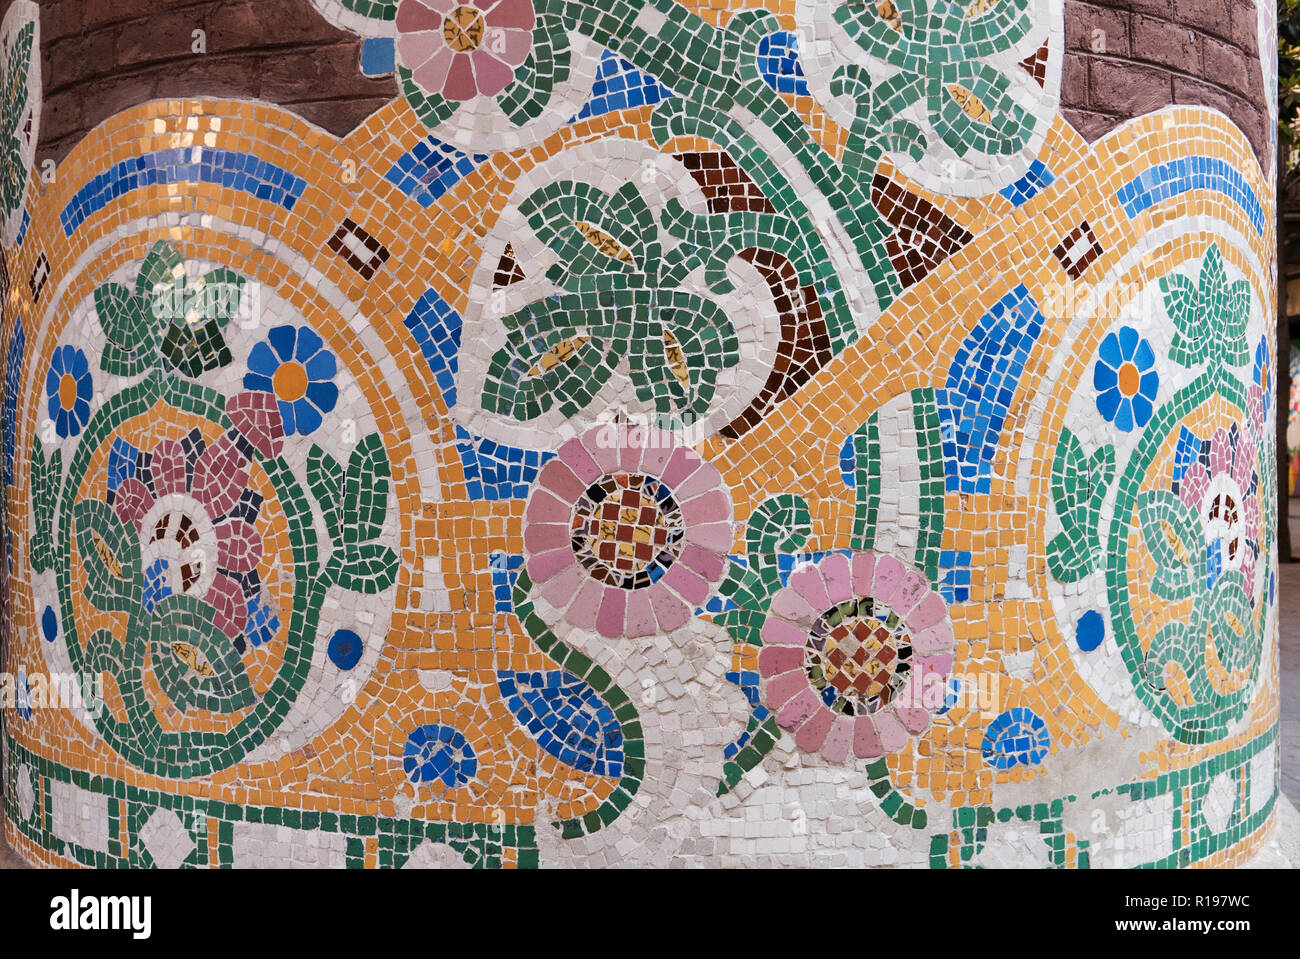 La billetterie du Palau de la Musica décoré de mosaïque colorée design, Barcelone, Espagne Banque D'Images